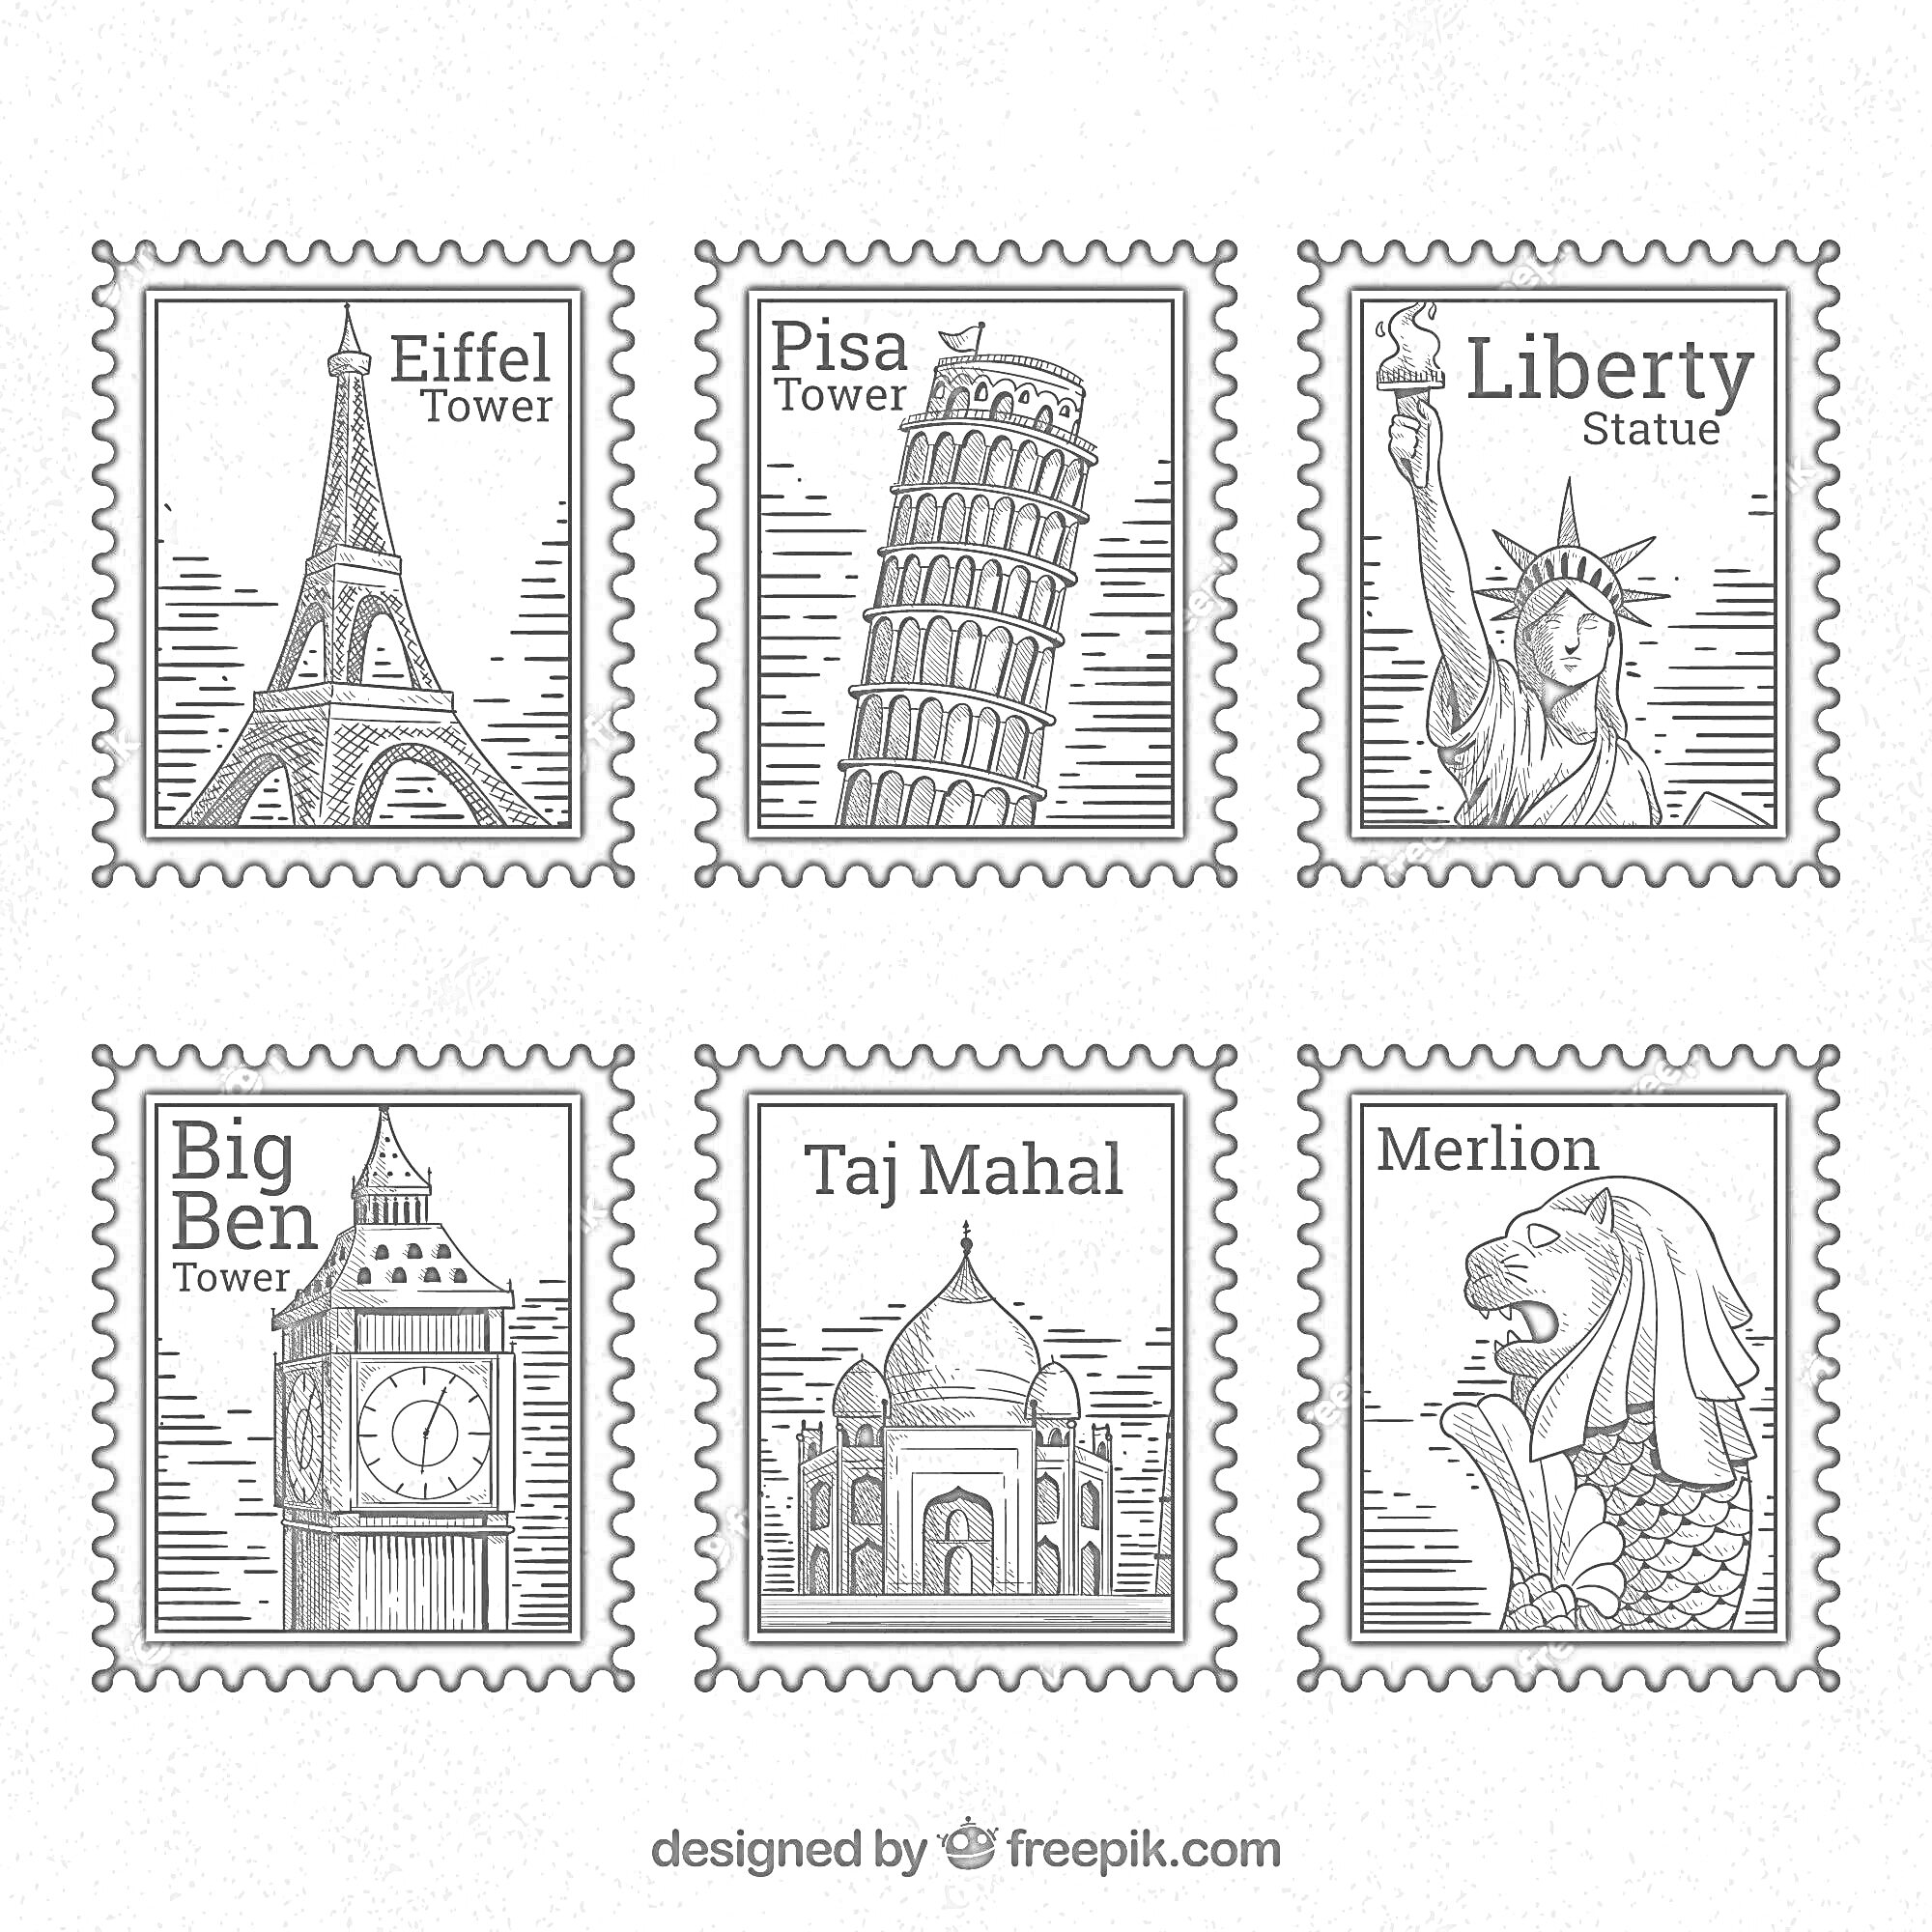 марки с достопримечательностями: Эйфелева башня, Пизанская башня, статуя Свободы, Биг-Бен, Тадж-Махал, Мерлайон